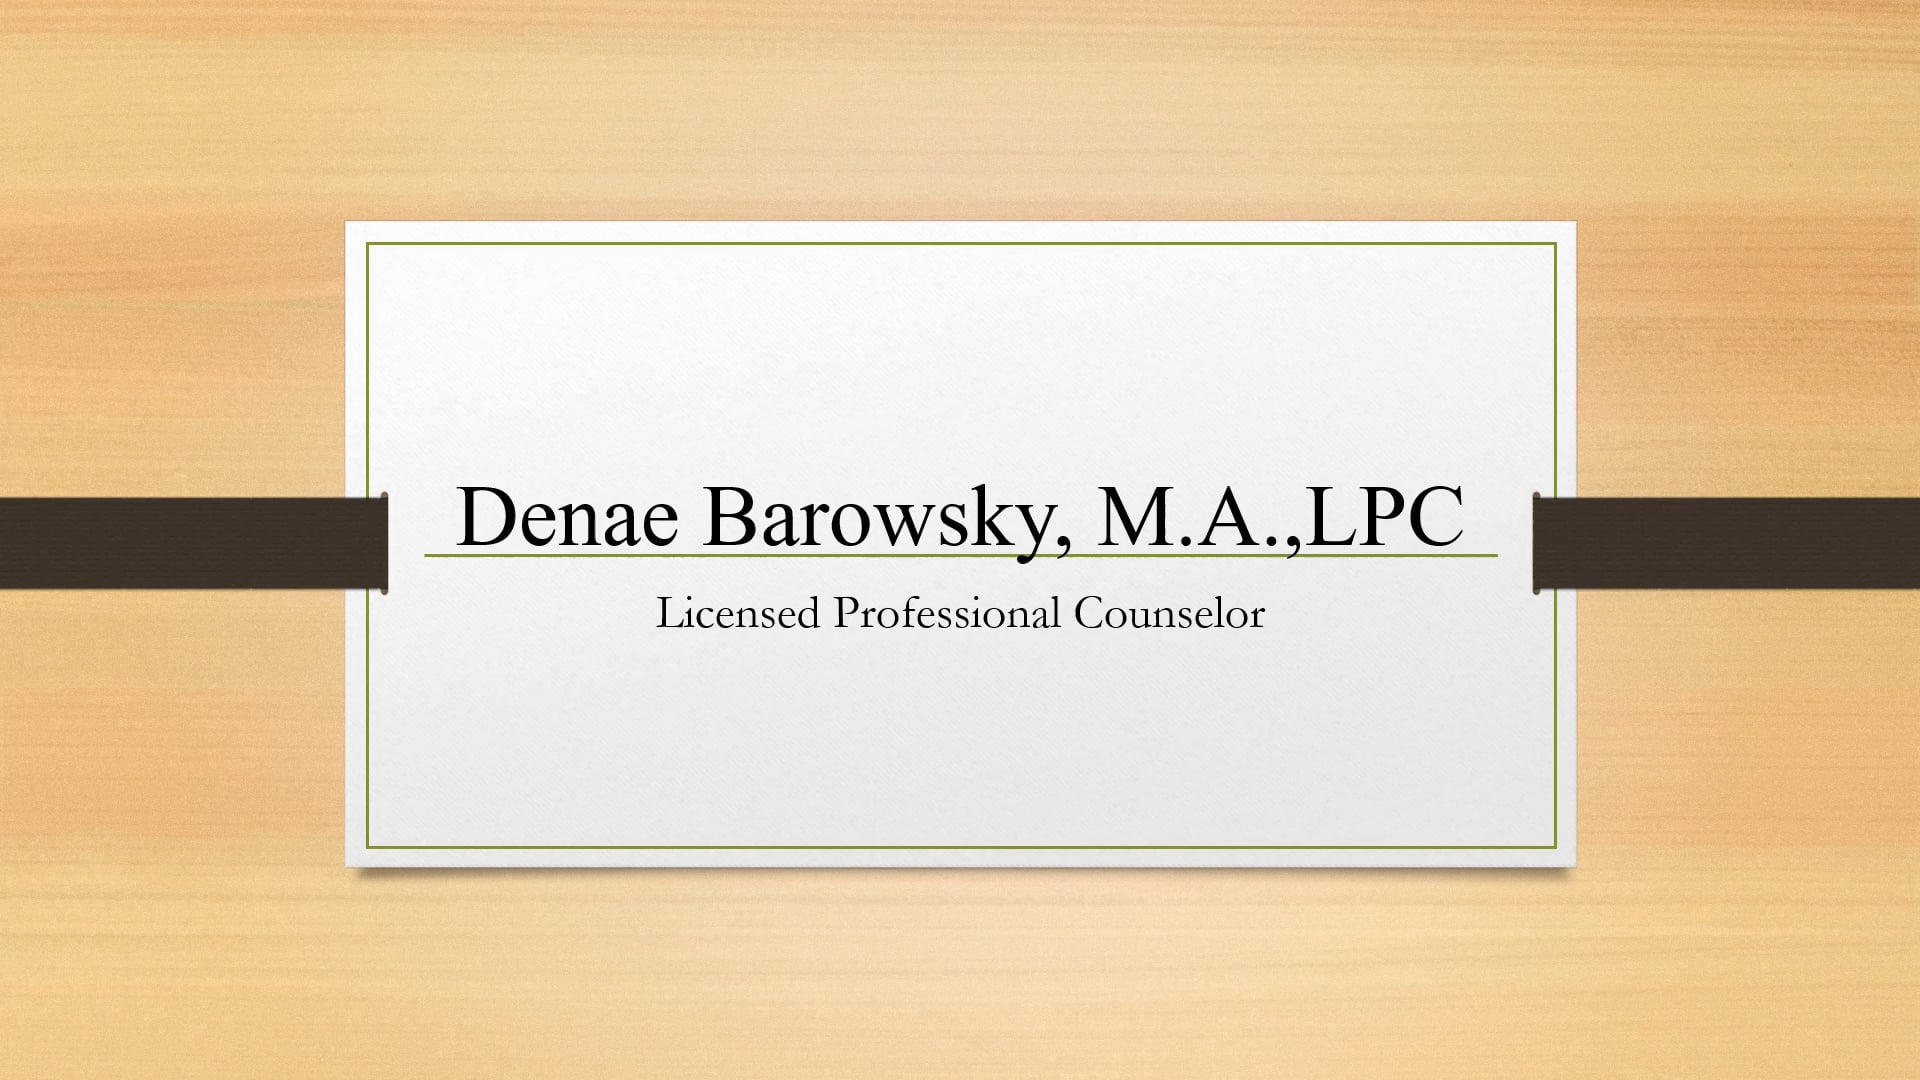 Denae L. Barowsky